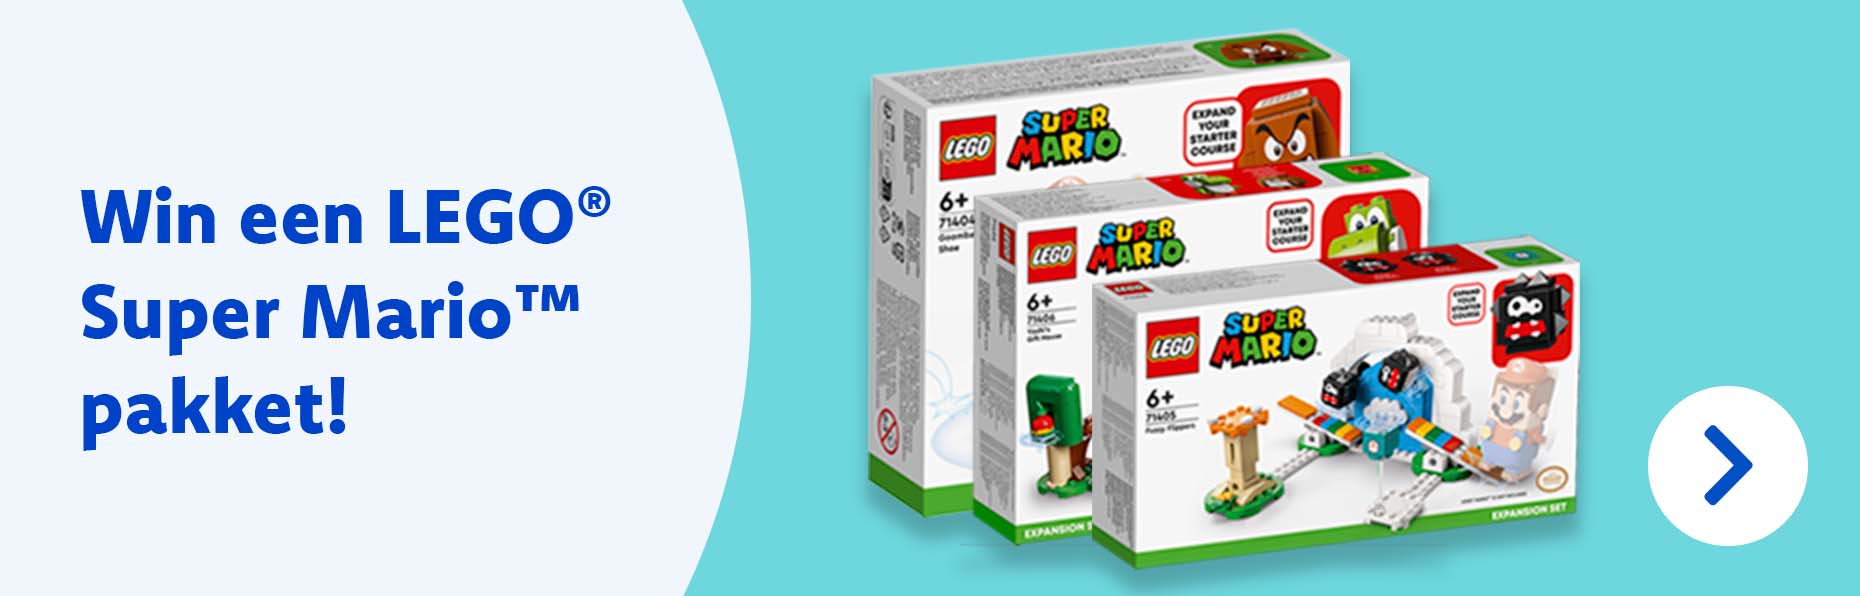 LEGO® Peach™ vervoegt Super Mario™ universum! Doe mee met onze wedstrijd en wie weet win jij een supercool LEGO® Super Mario™ pakket!